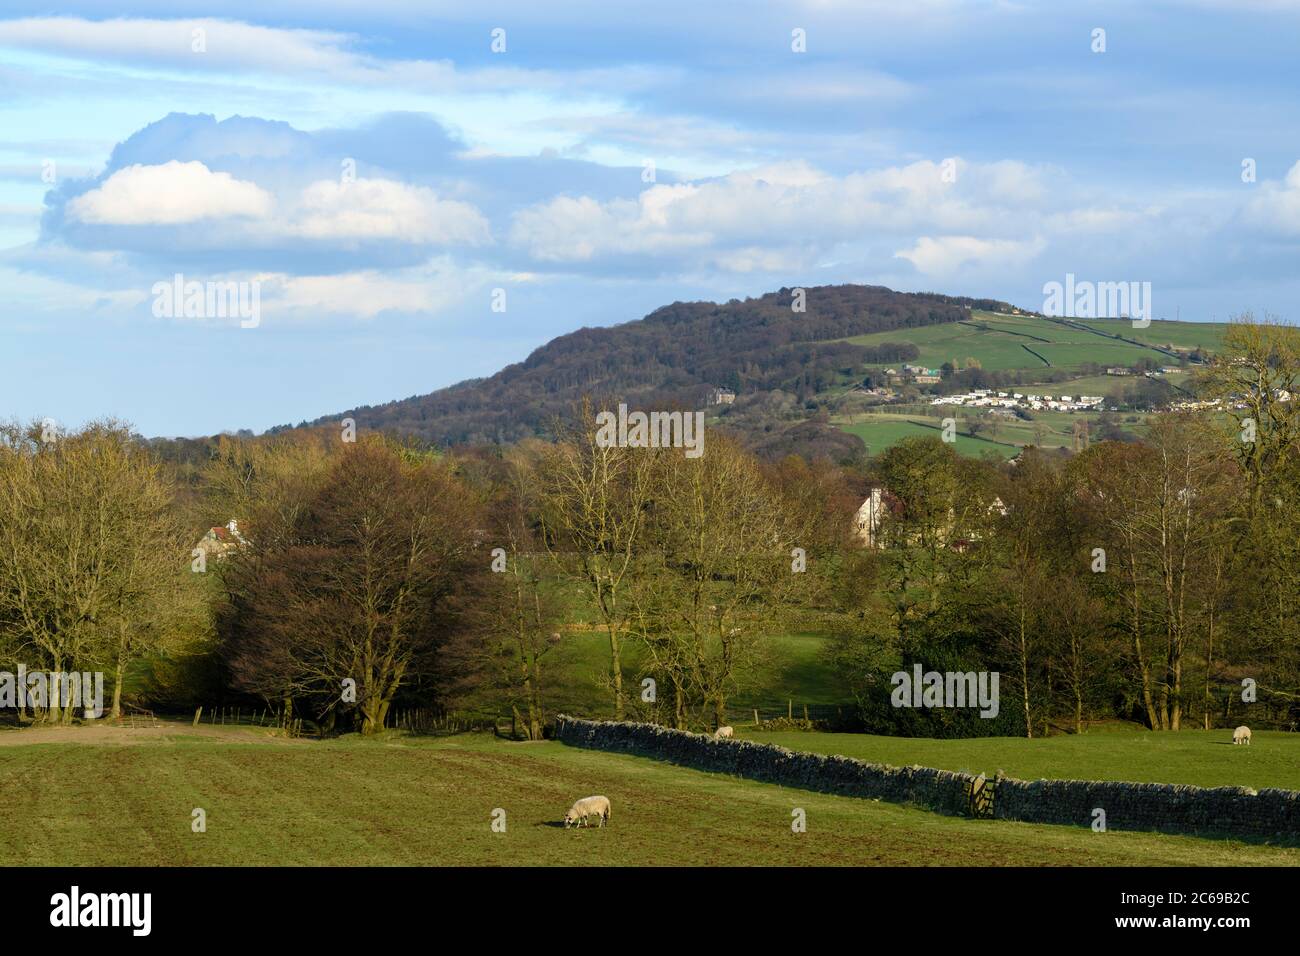 Hoch prominenter Landmark Hill (Ridge), Hügel Waldbäume, Ackerland Felder, Schafe & blauer Himmel - malerische Aussicht auf Otley Chevin, Wharfedale, England Großbritannien Stockfoto